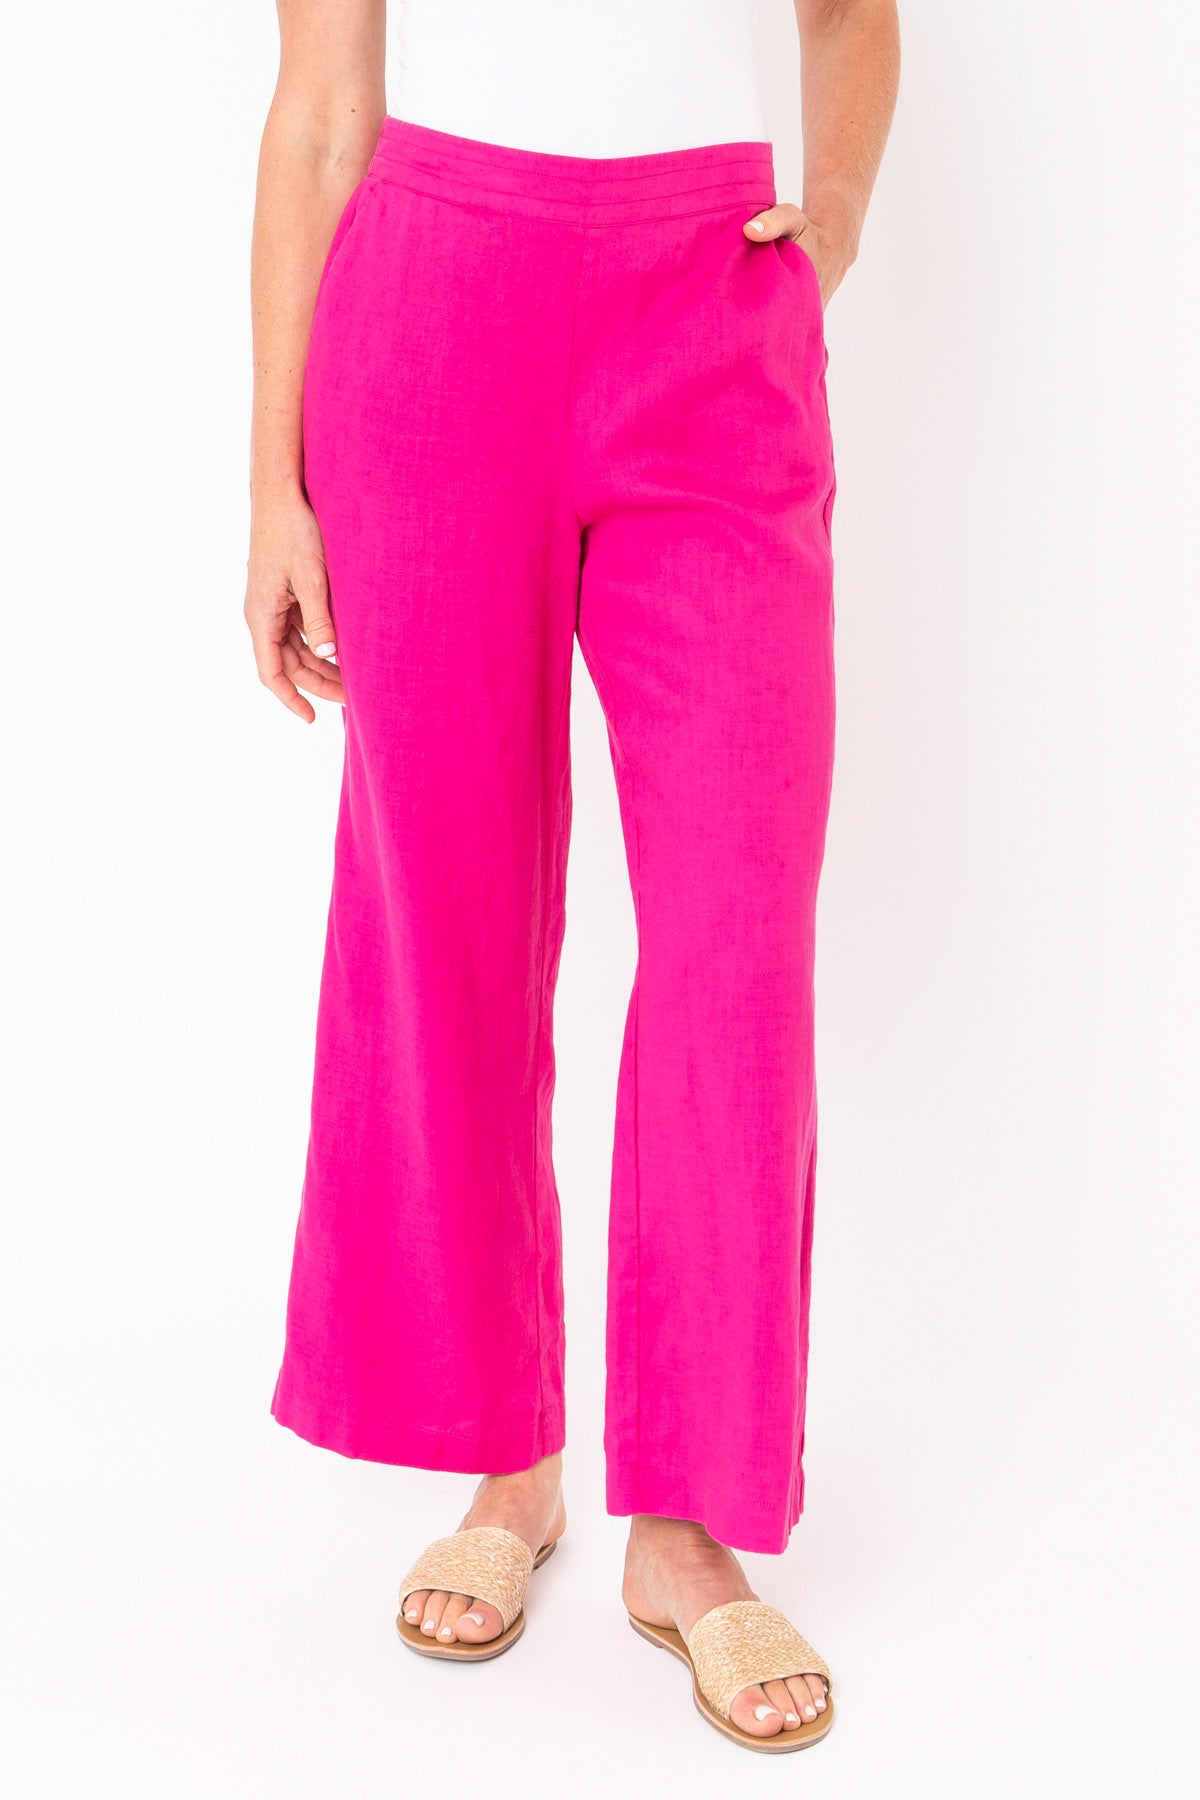 Women's Wide Leg Linen Pants in Magenta Pink